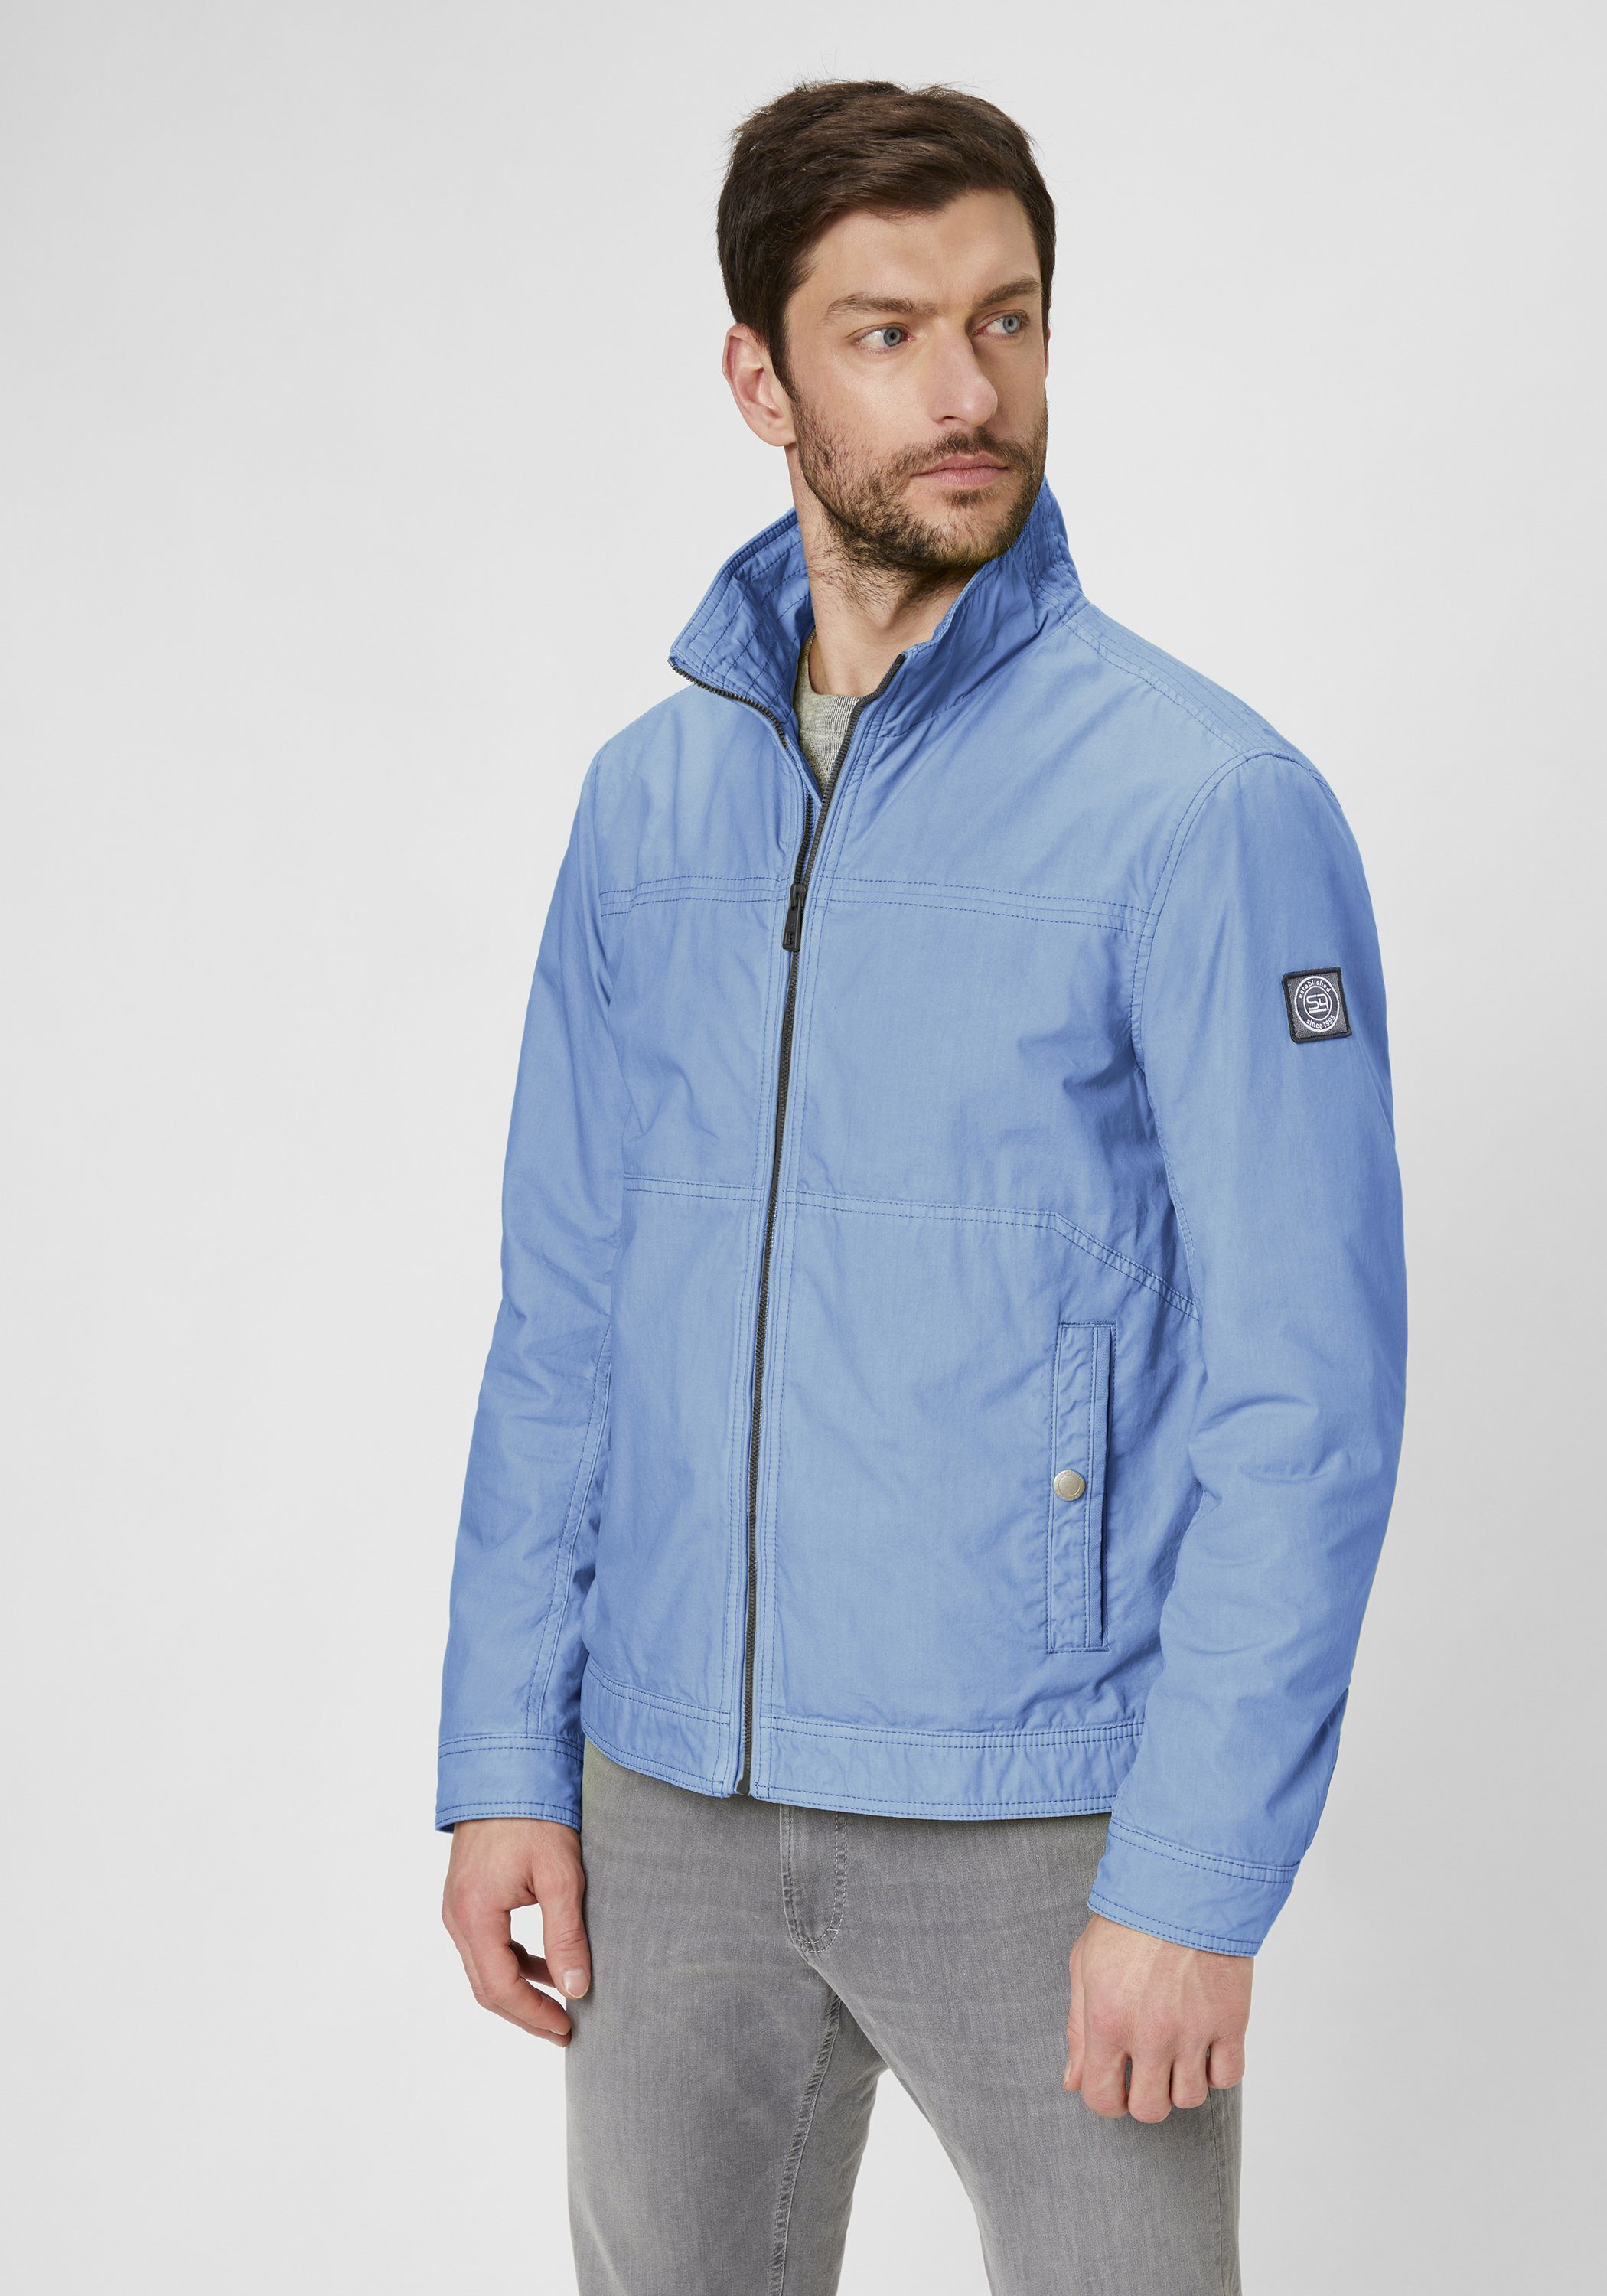 Sommerjacke Baumwolle aus Modern leichte reiner MIAMI lt. sky Jacke Jackets Fit blue S4